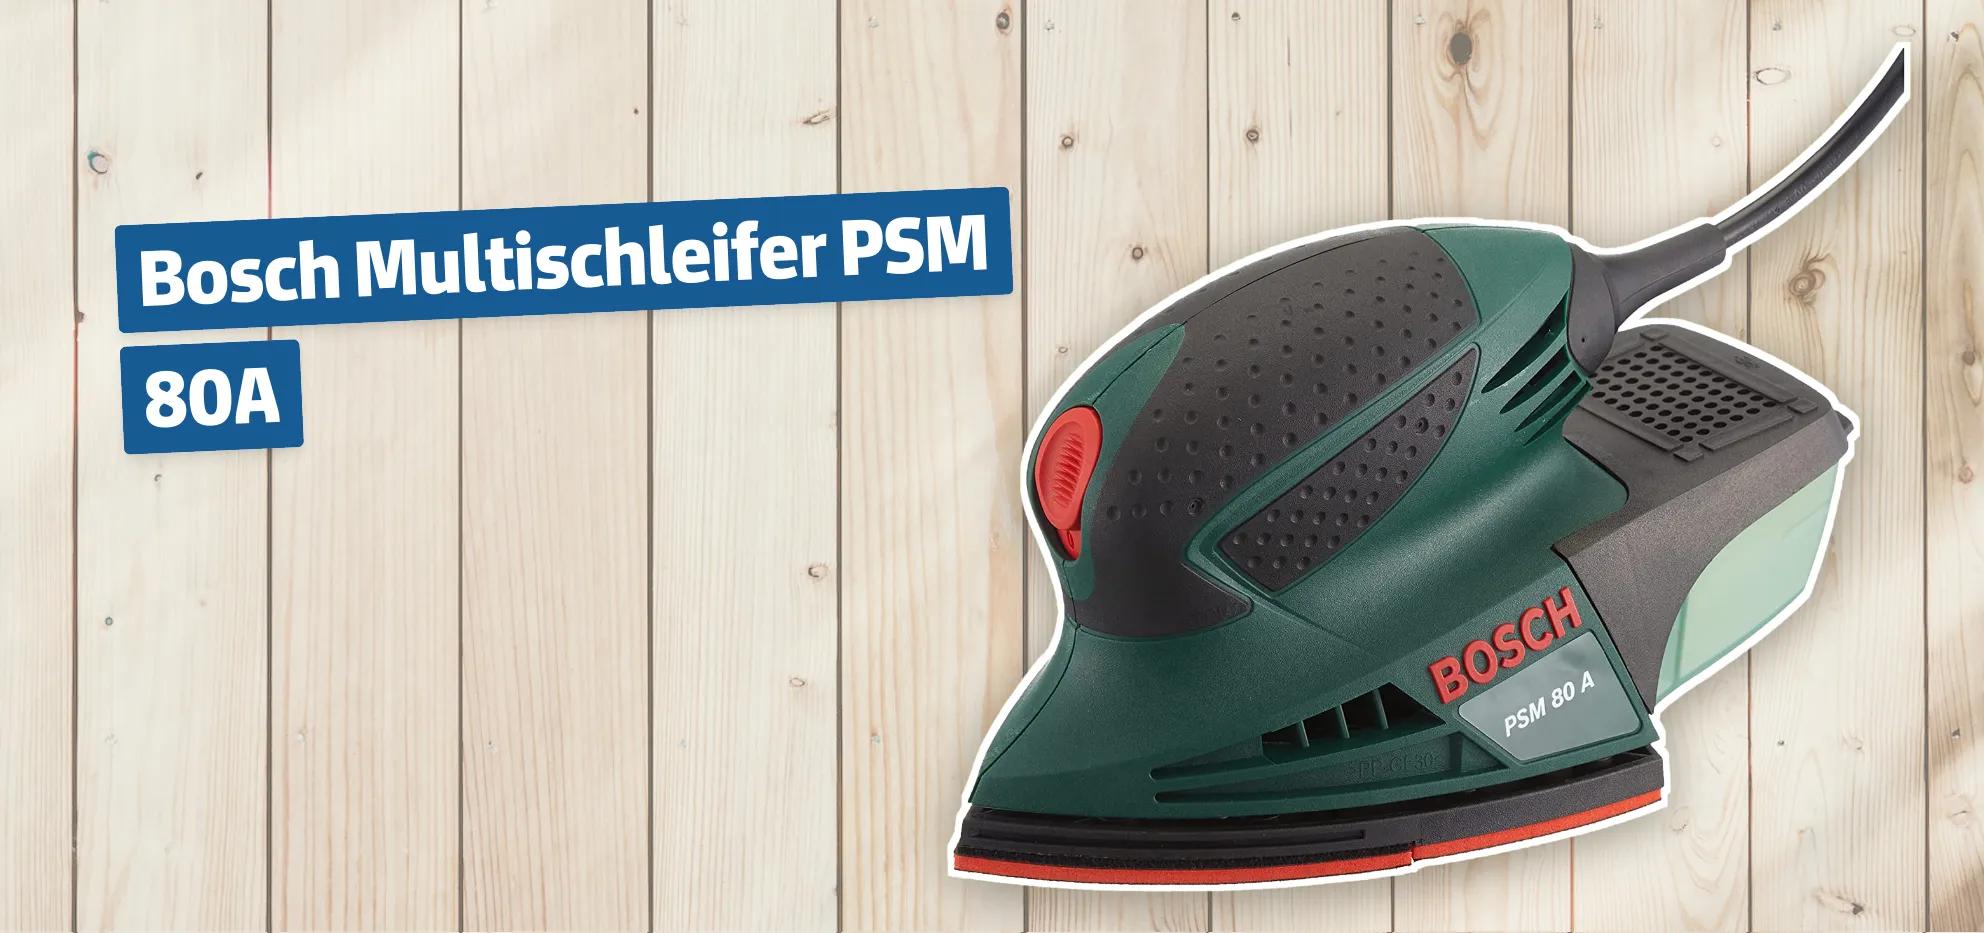 Bosch Multischleifer PSM 80A